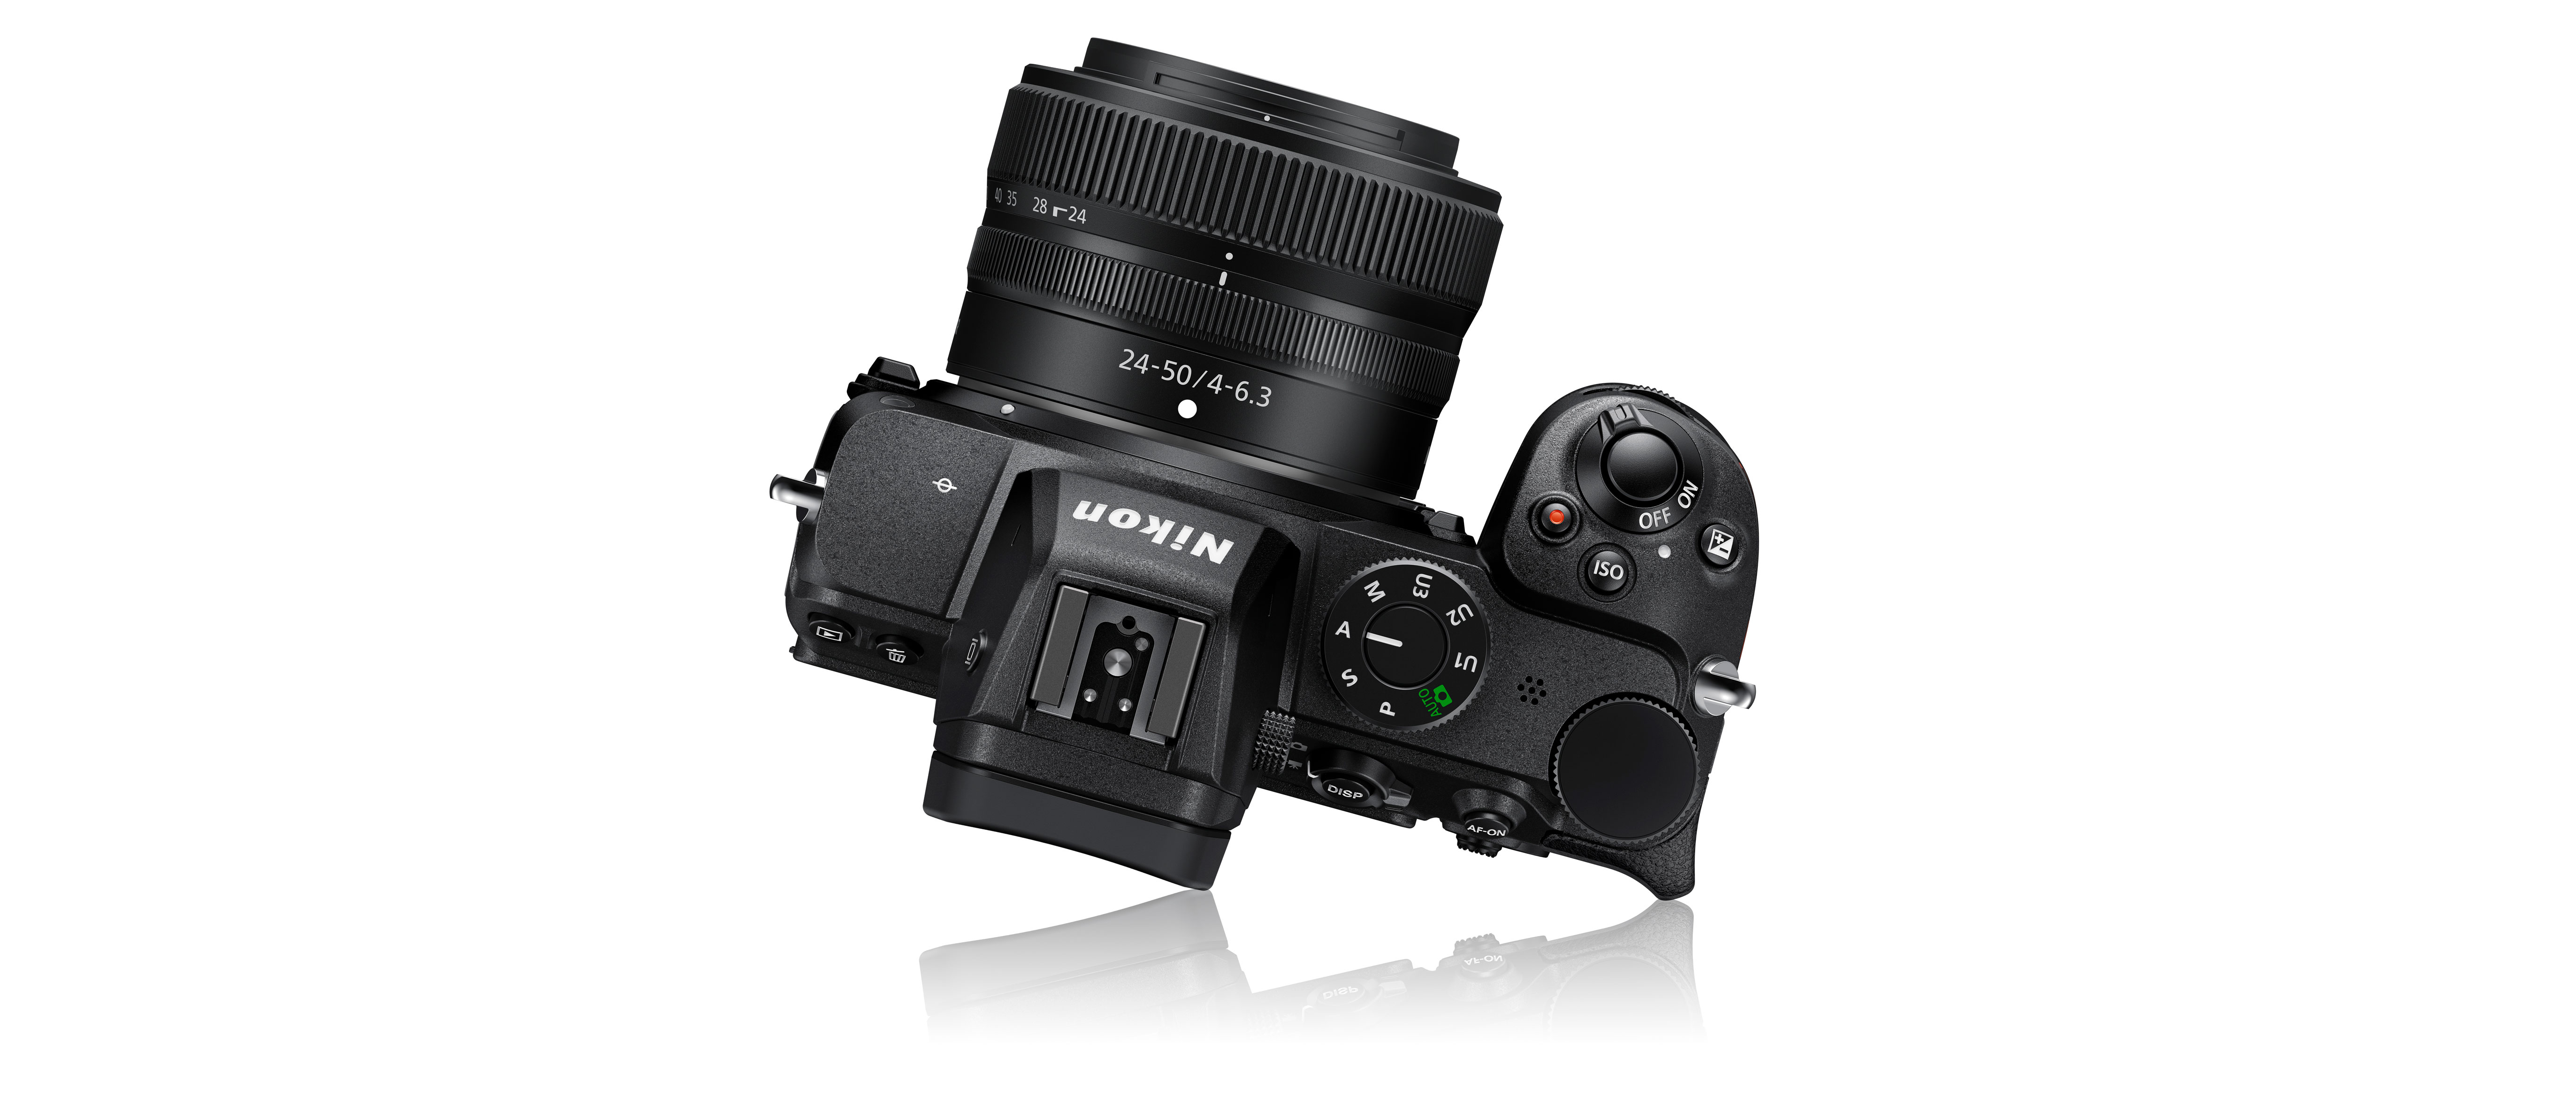 Nikkor Z 24-50mm f/4-6.3 review | Digital Camera World